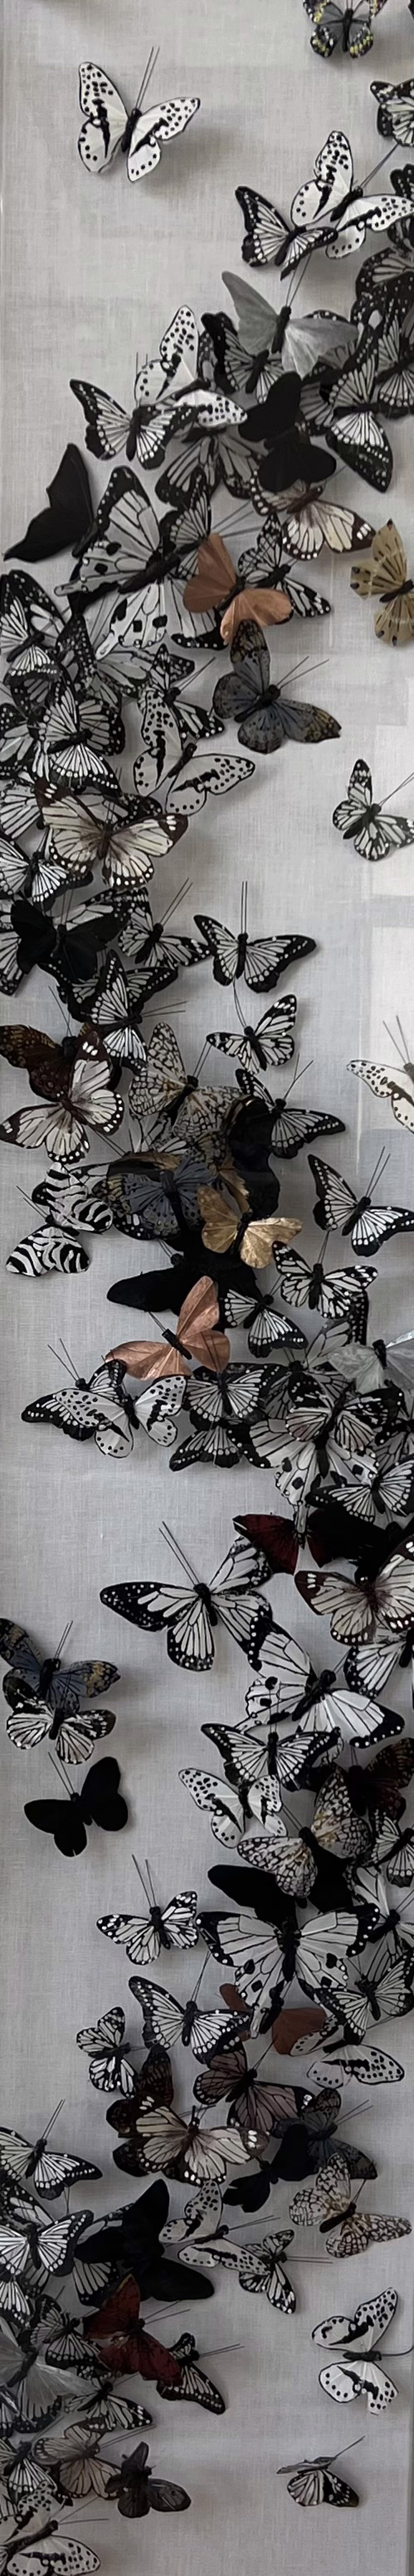 LL 1 - Vert Butterflies by Juan Carlos Collada